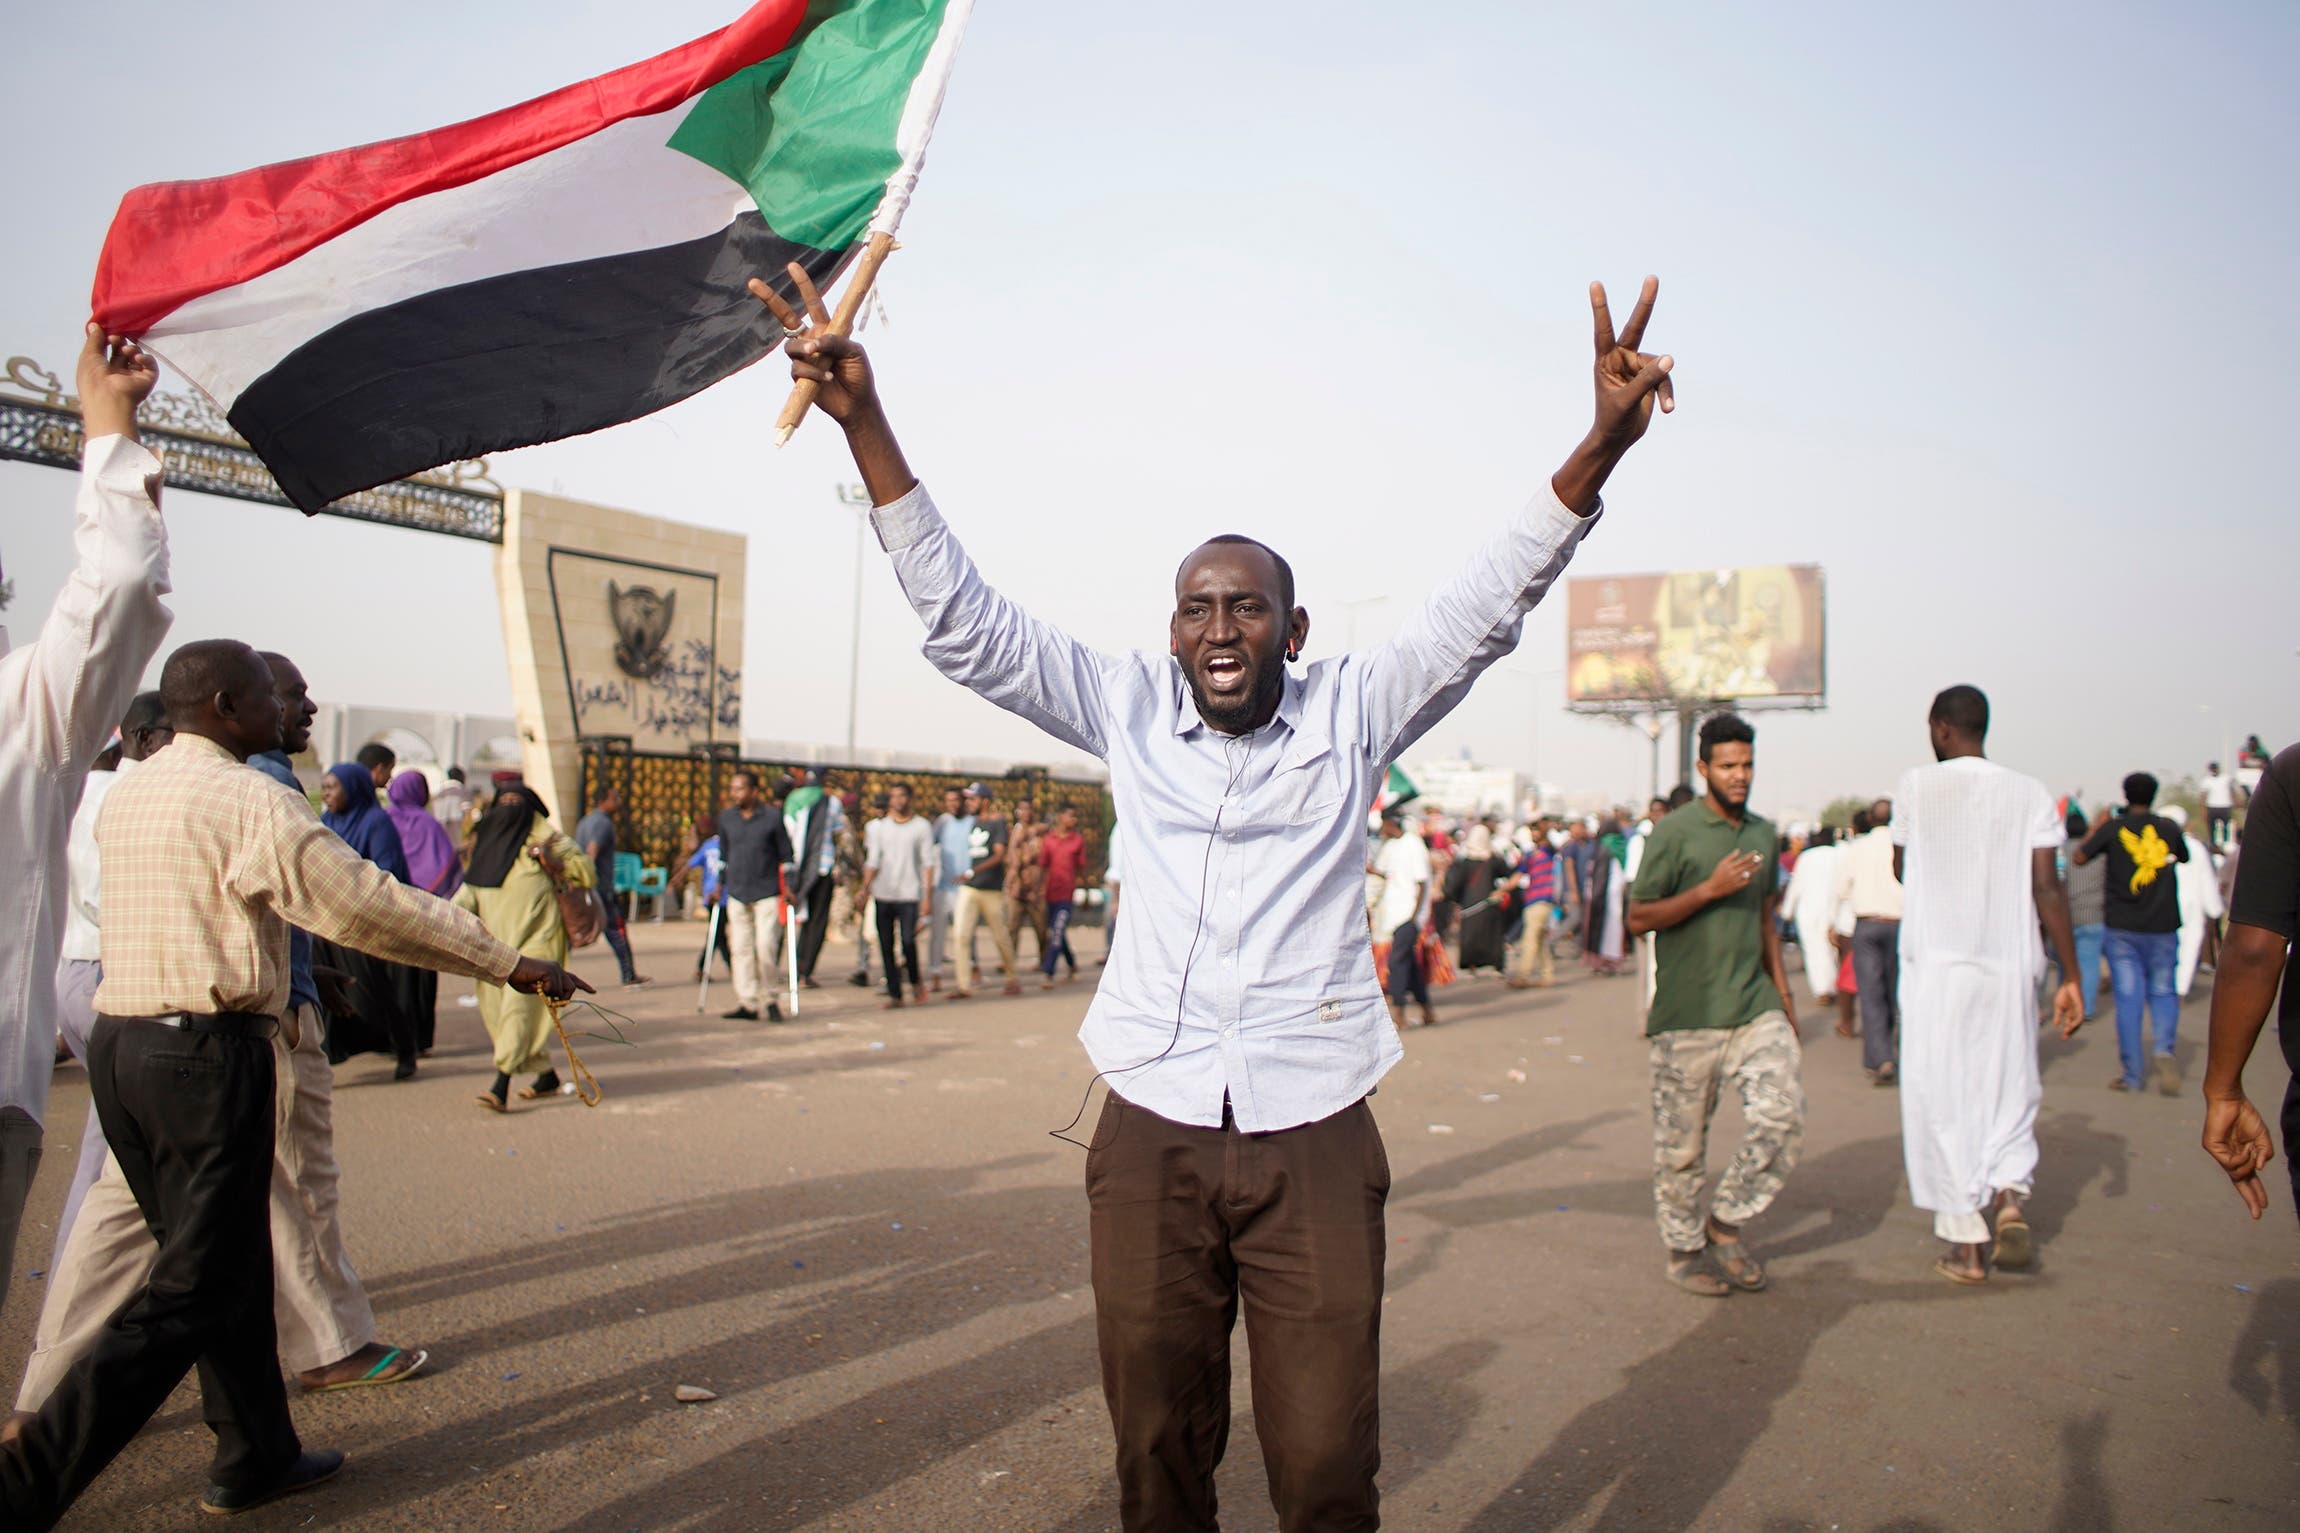 Mindestens vier Monate lang protestiere die Bevölkerung gegen ihren Präsidenten. (Bild: EPA/STR, Sudan, 11. April 2019)